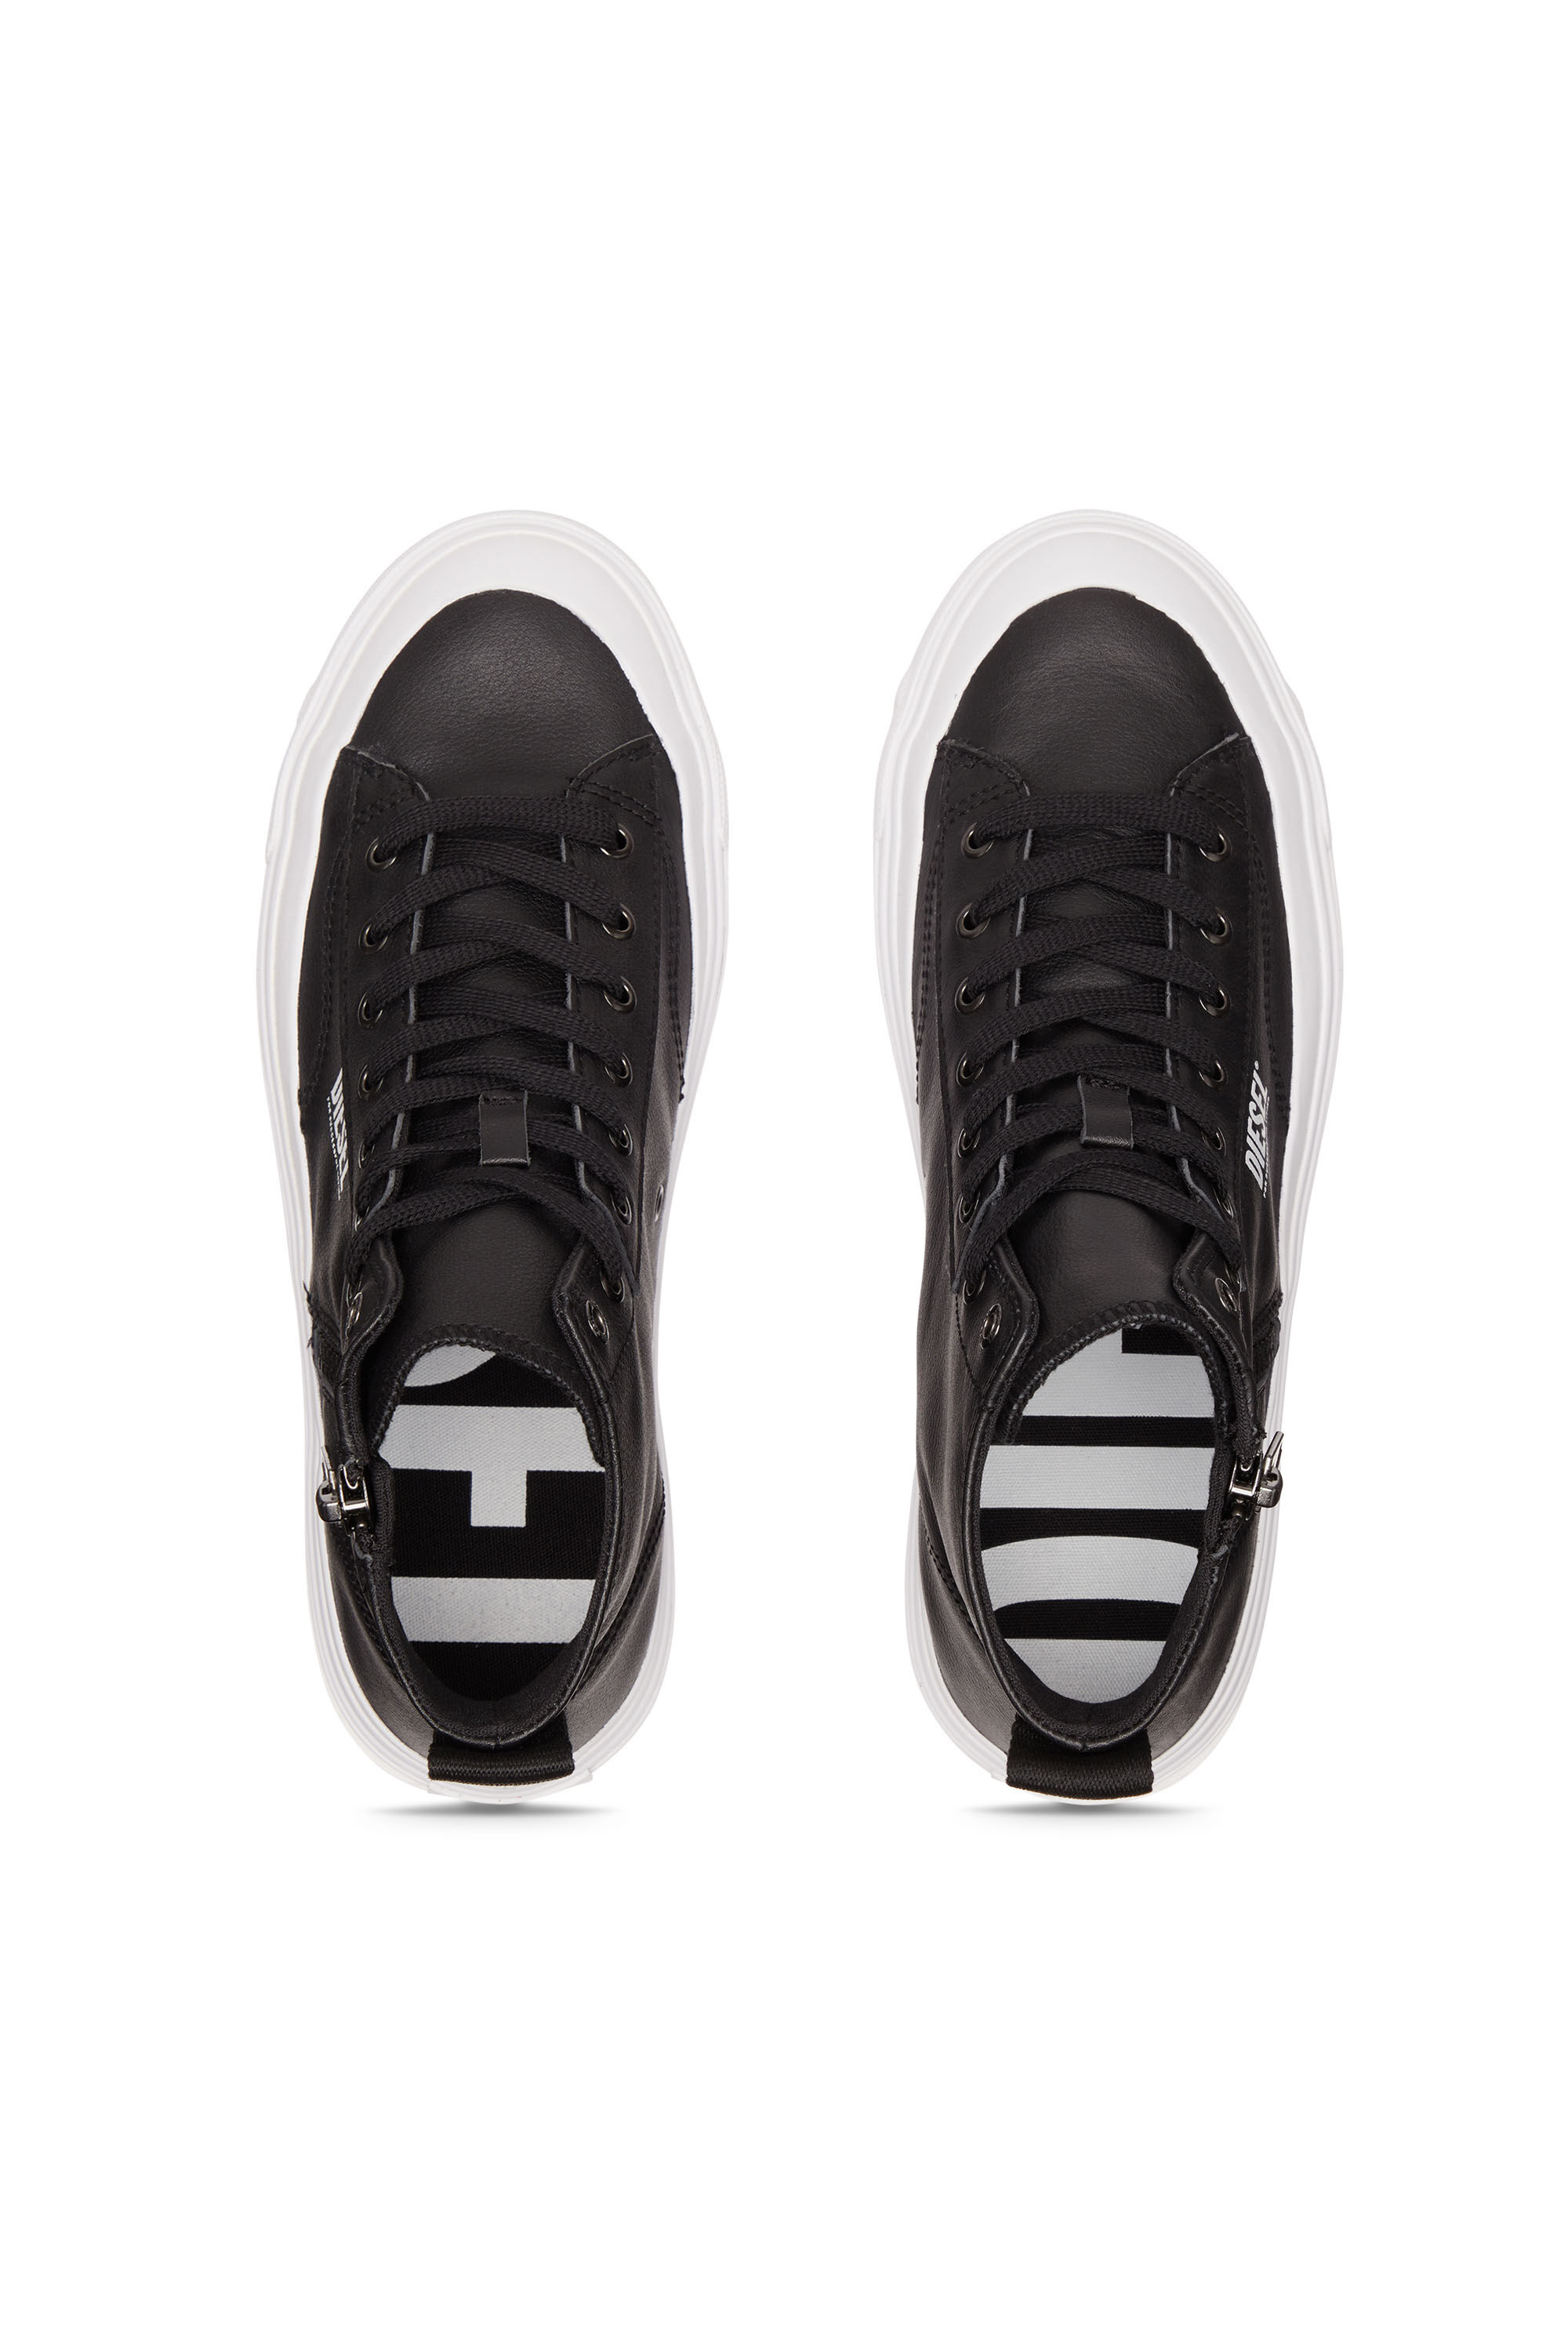 Diesel - S-ATHOS DV MID, Man S-Athos Dv Mid - High-top sneakers with side zip in Black - Image 4